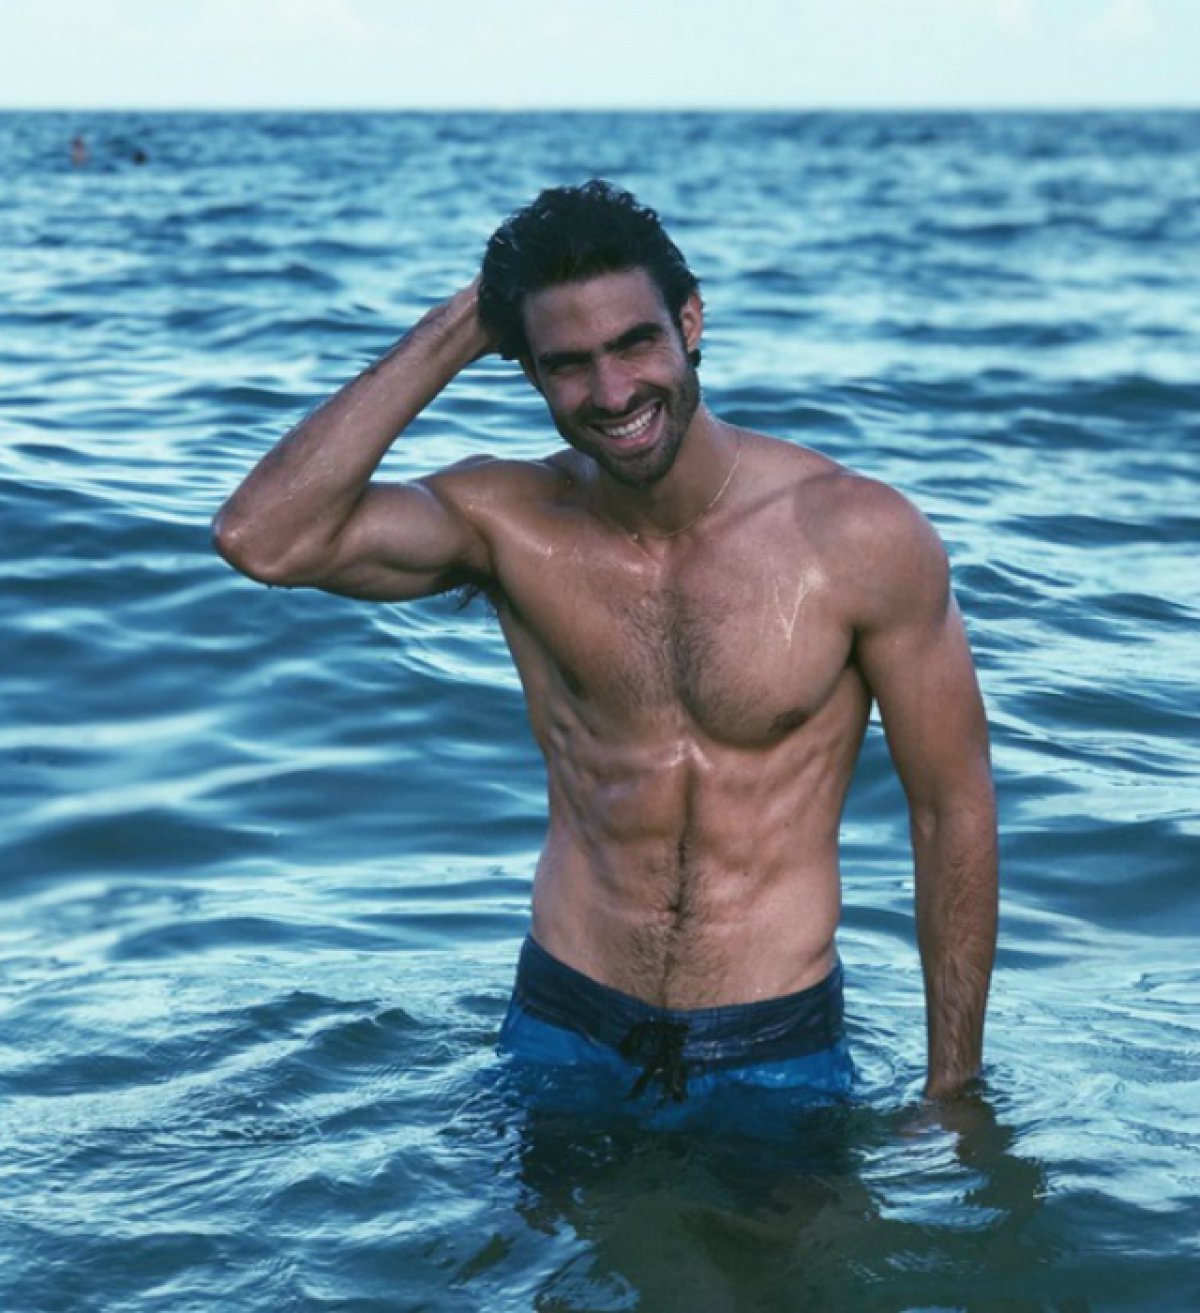 Juan Betancourt: “La gente me prejuzga por ser guapo”